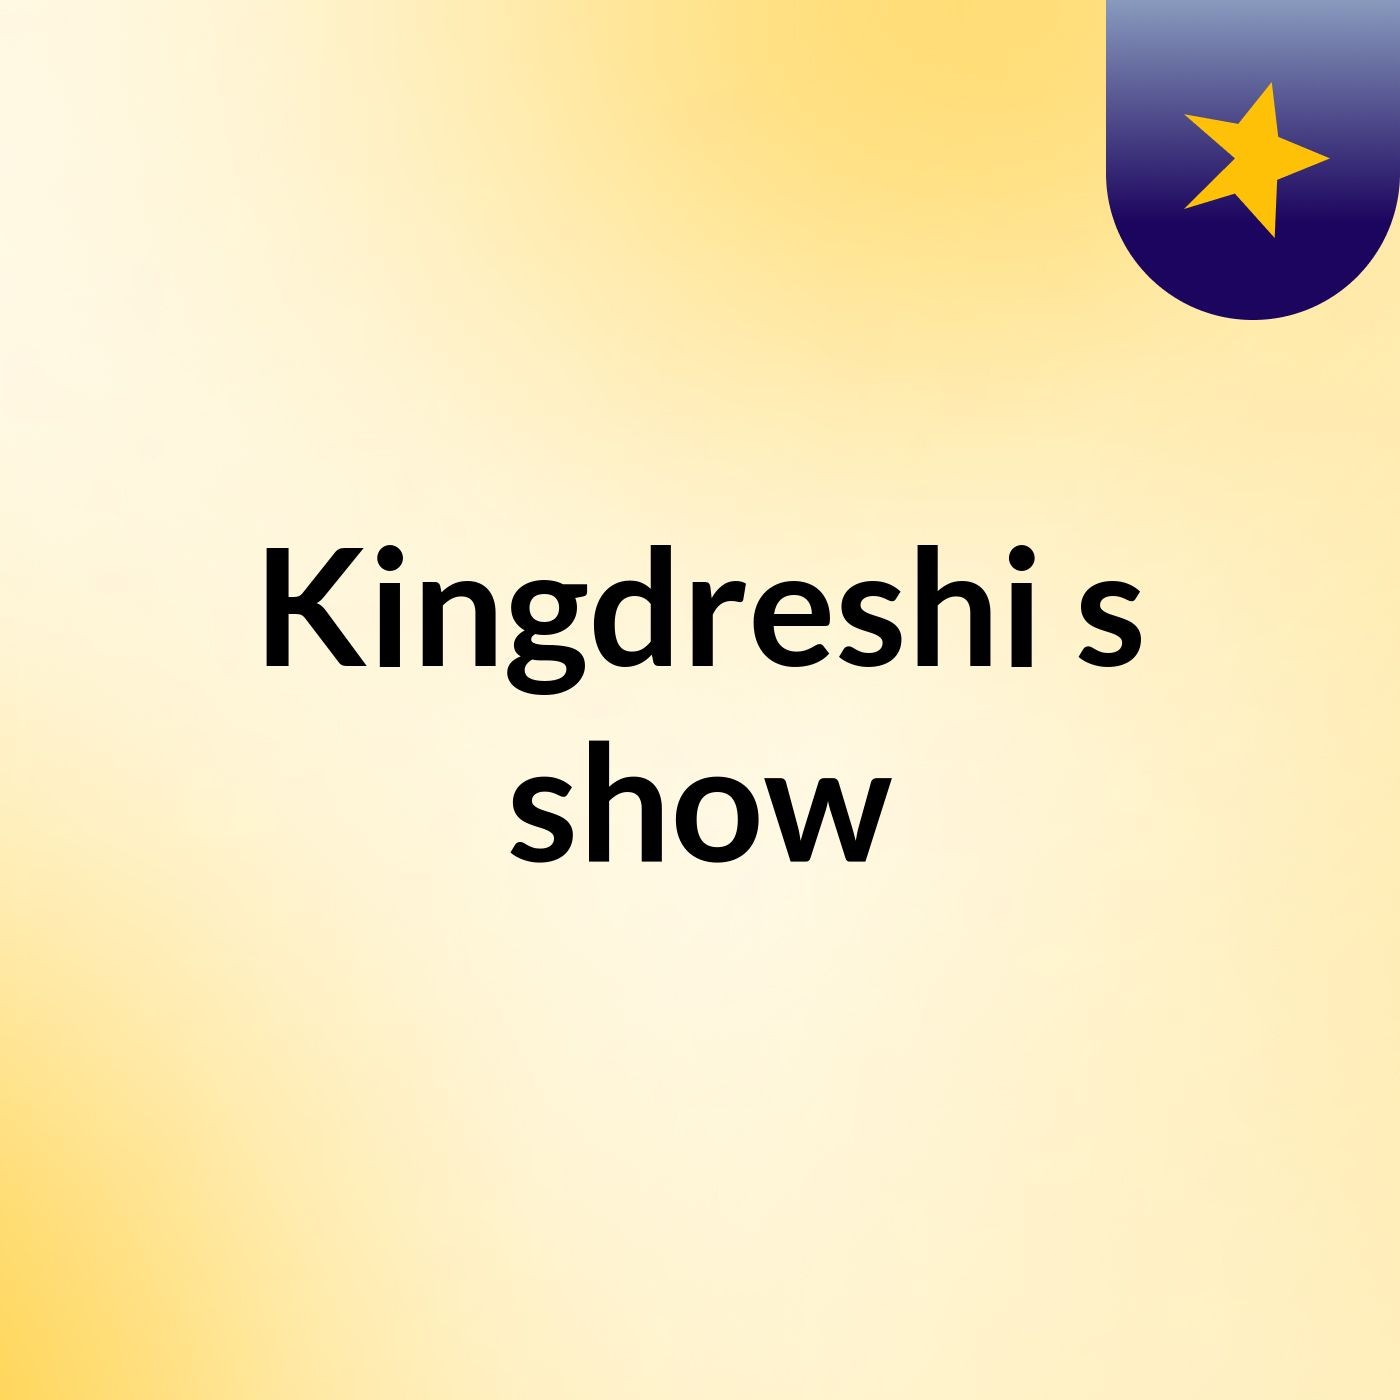 Kingdreshi's show